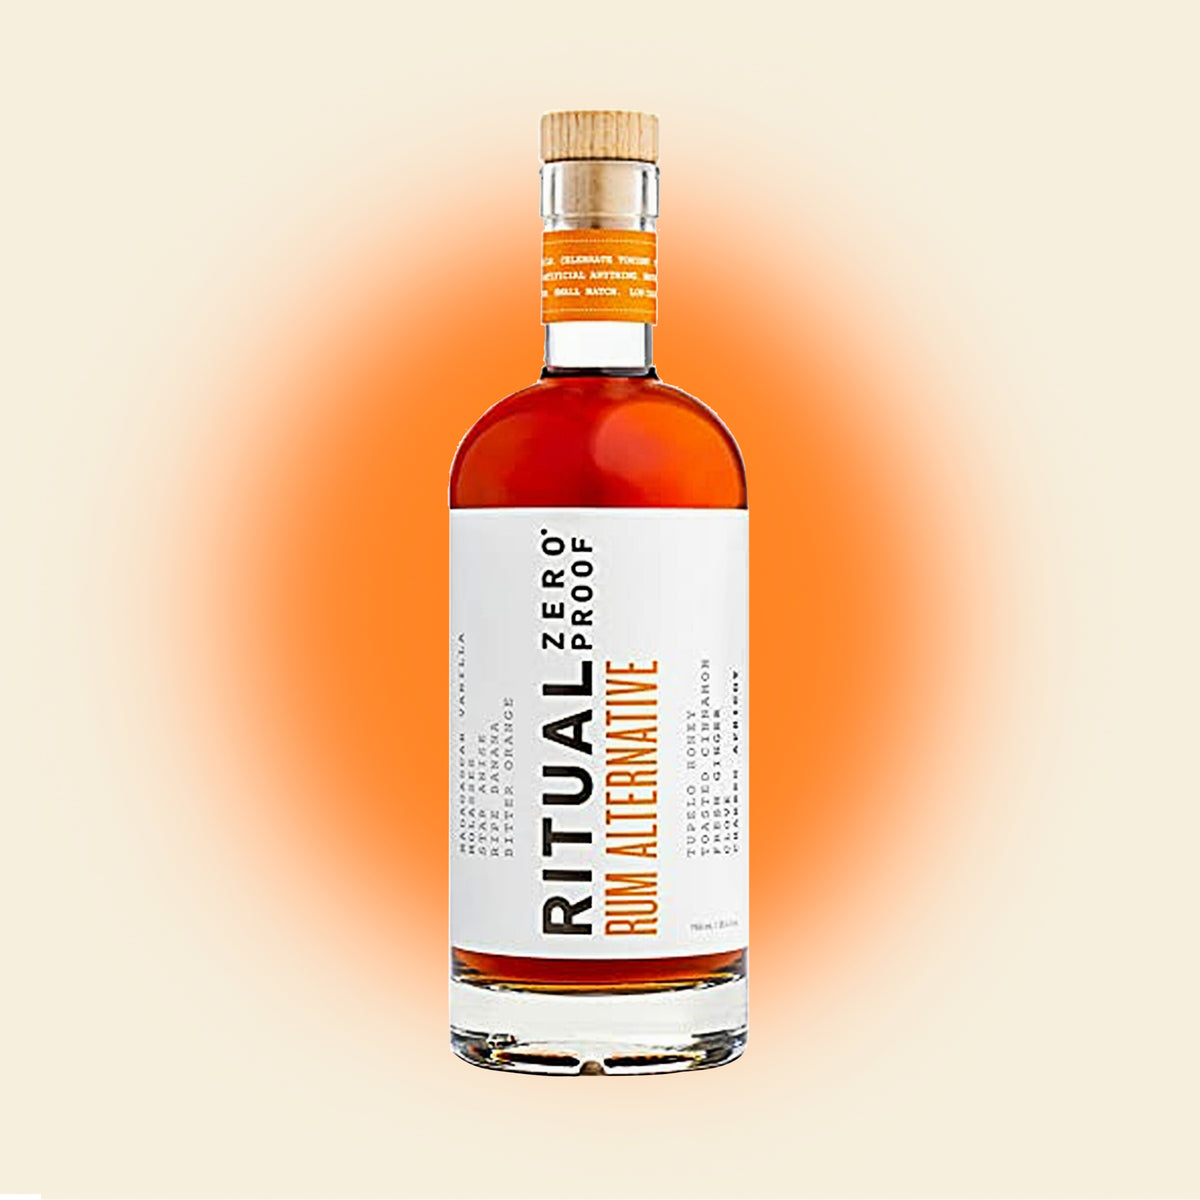 Ritual Rum Nonalcoholic Spirit